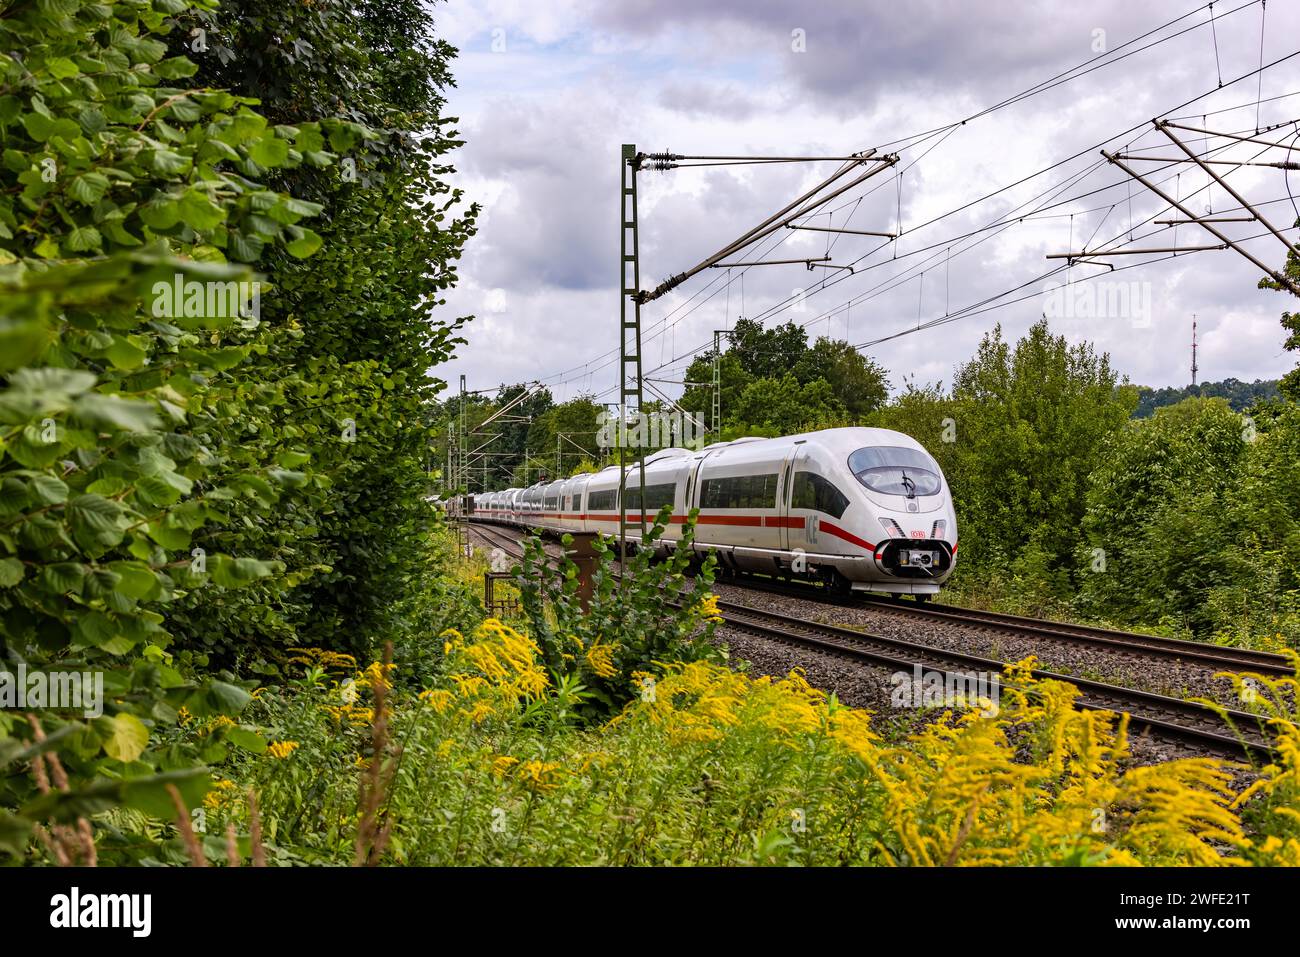 Ein ICE-Expresszug für den Personenfernverkehr zwischen blühenden Pflanzen und Bäumen auf einer Eisenbahnstrecke in Bayern Stockfoto